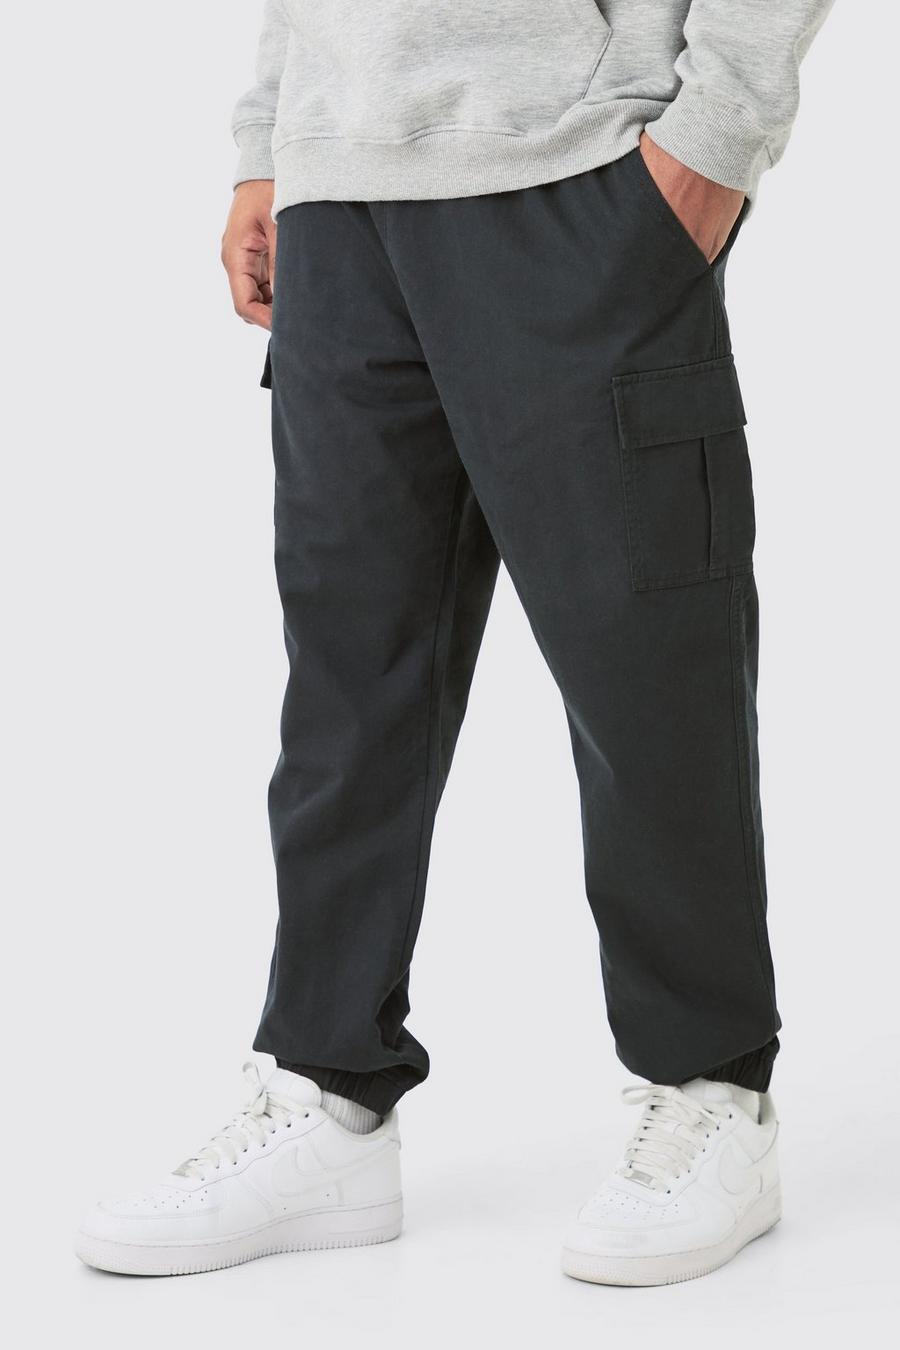 Pantalón Plus cargo ajustado de sarga con cintura elástica, Black